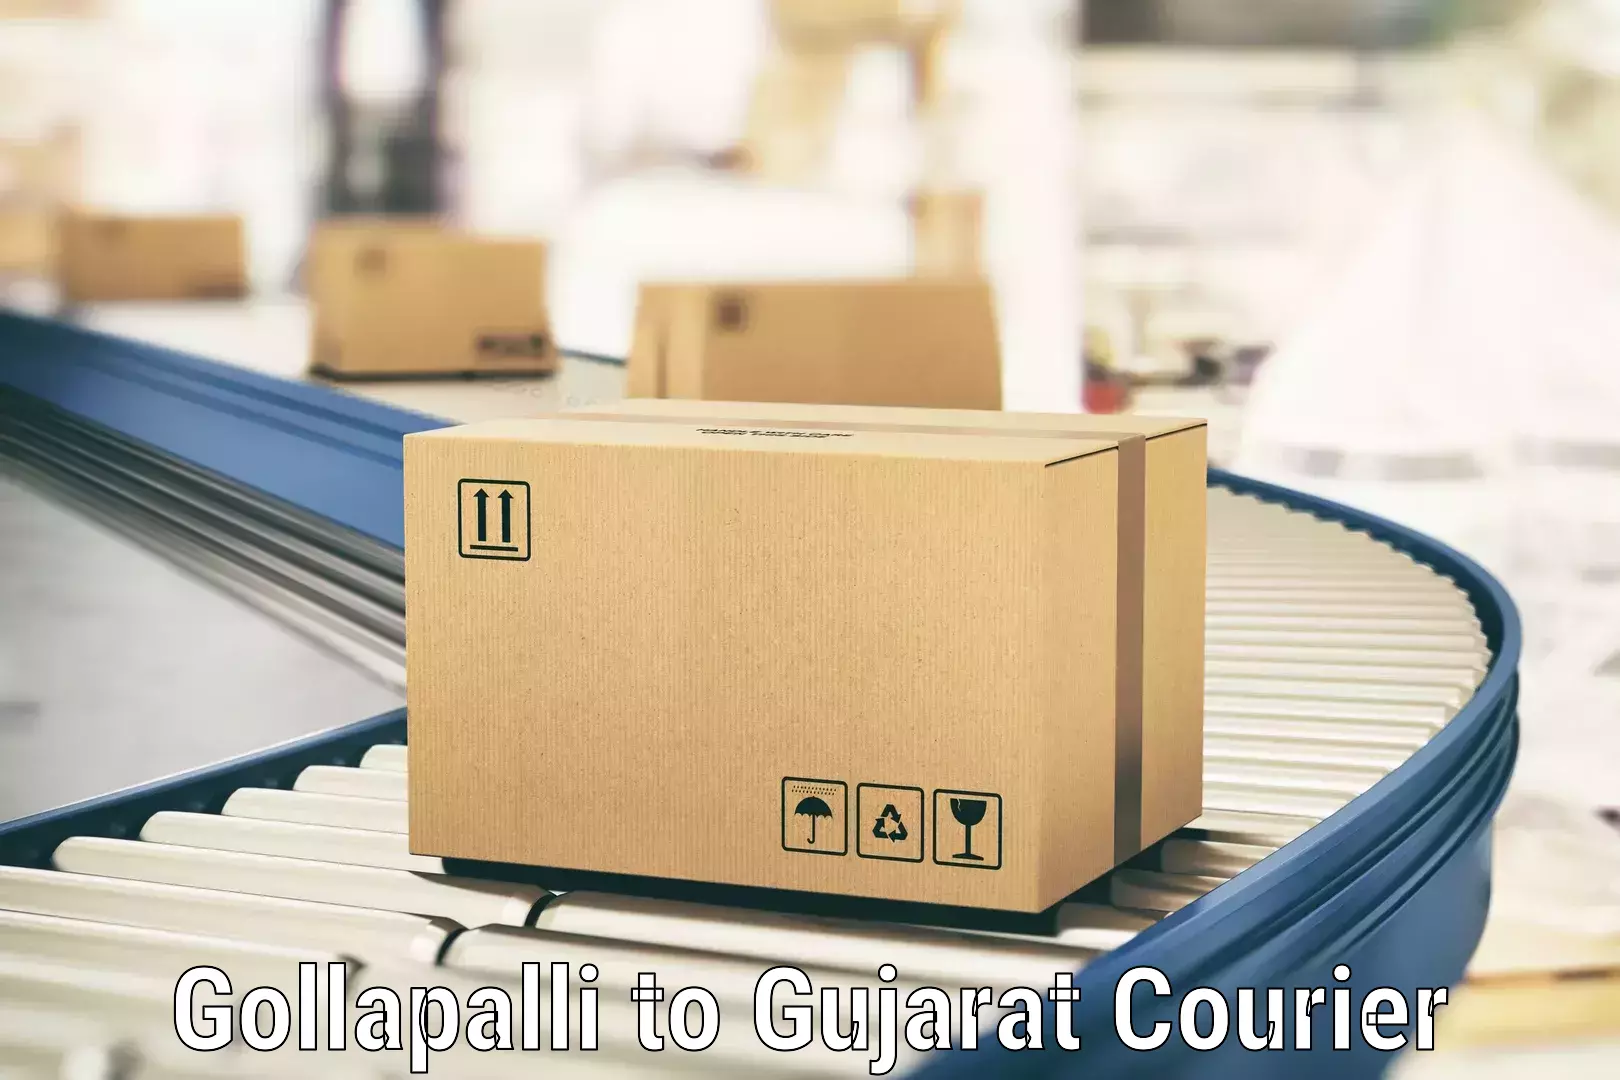 Courier service comparison Gollapalli to Nasvadi